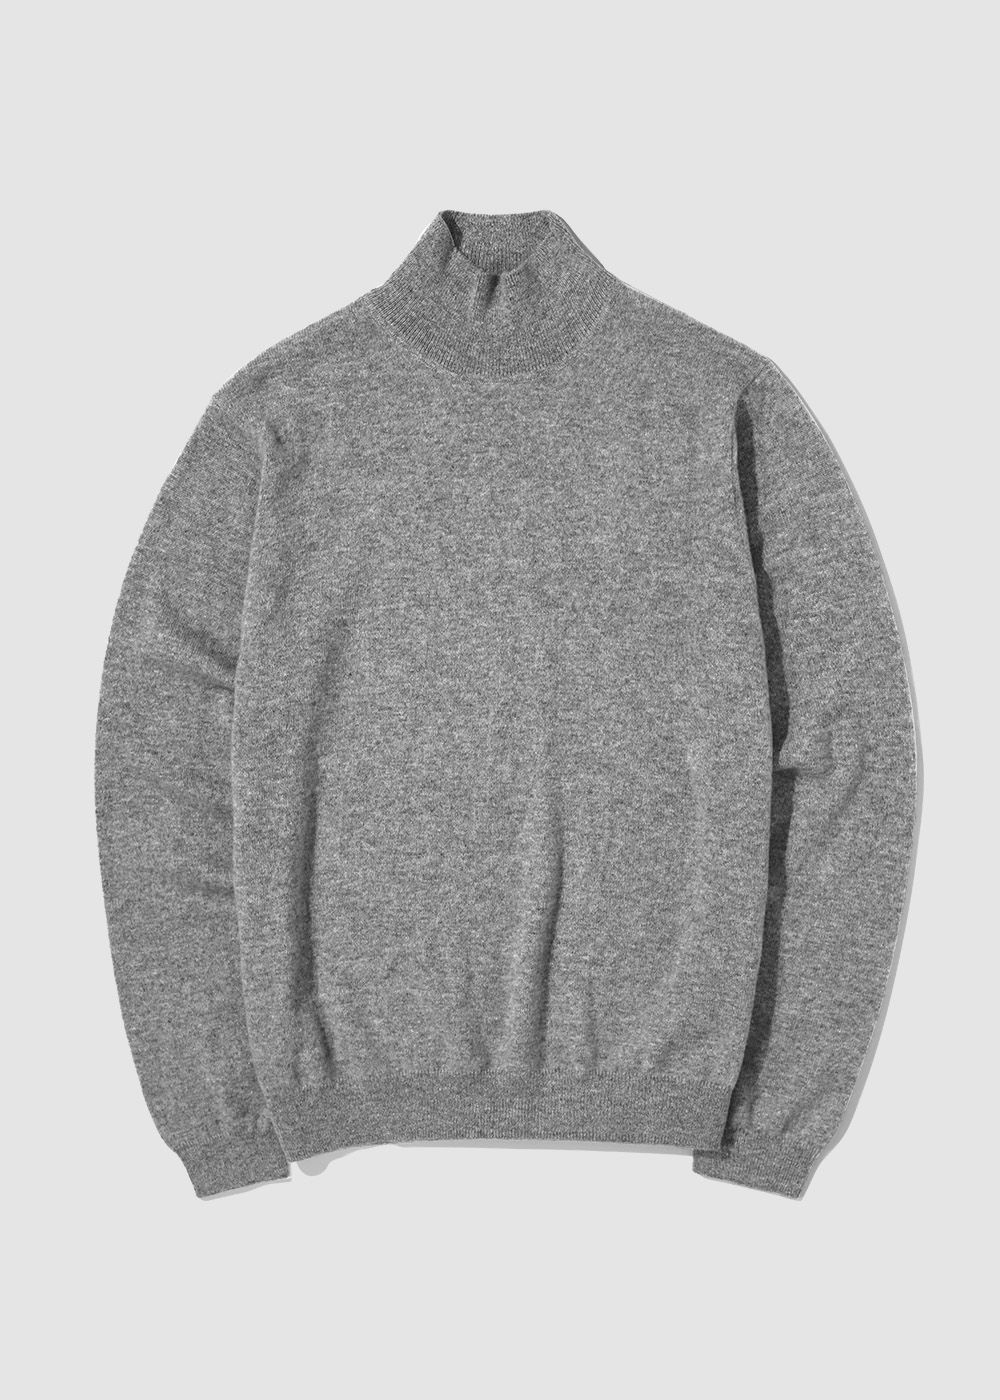 Cashmere 100% Mockneck Knit _ gray